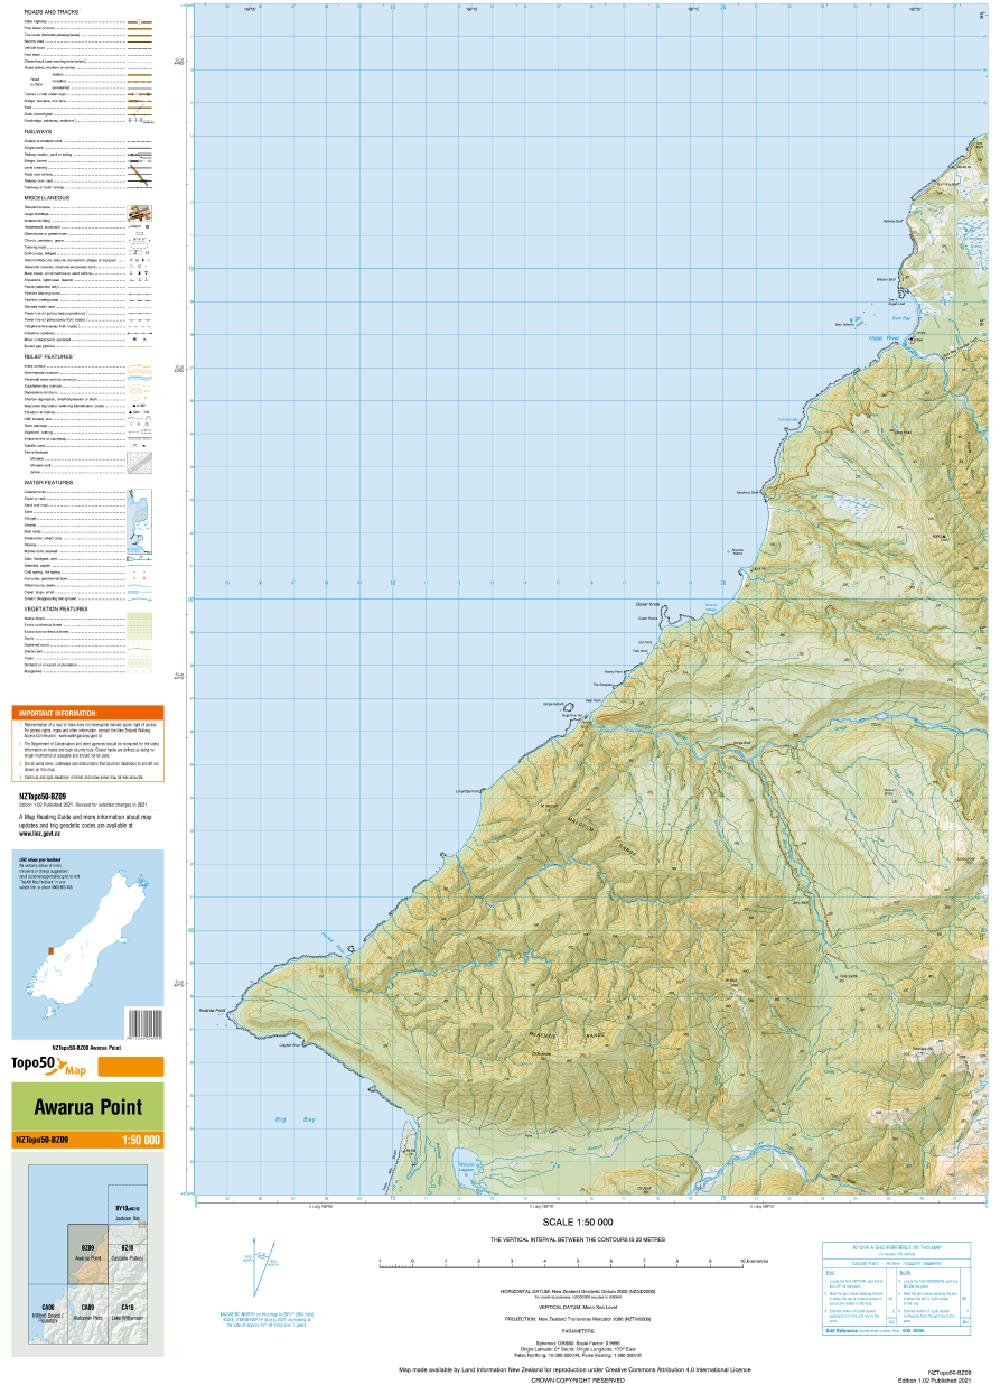 Topo map of Awarua Point